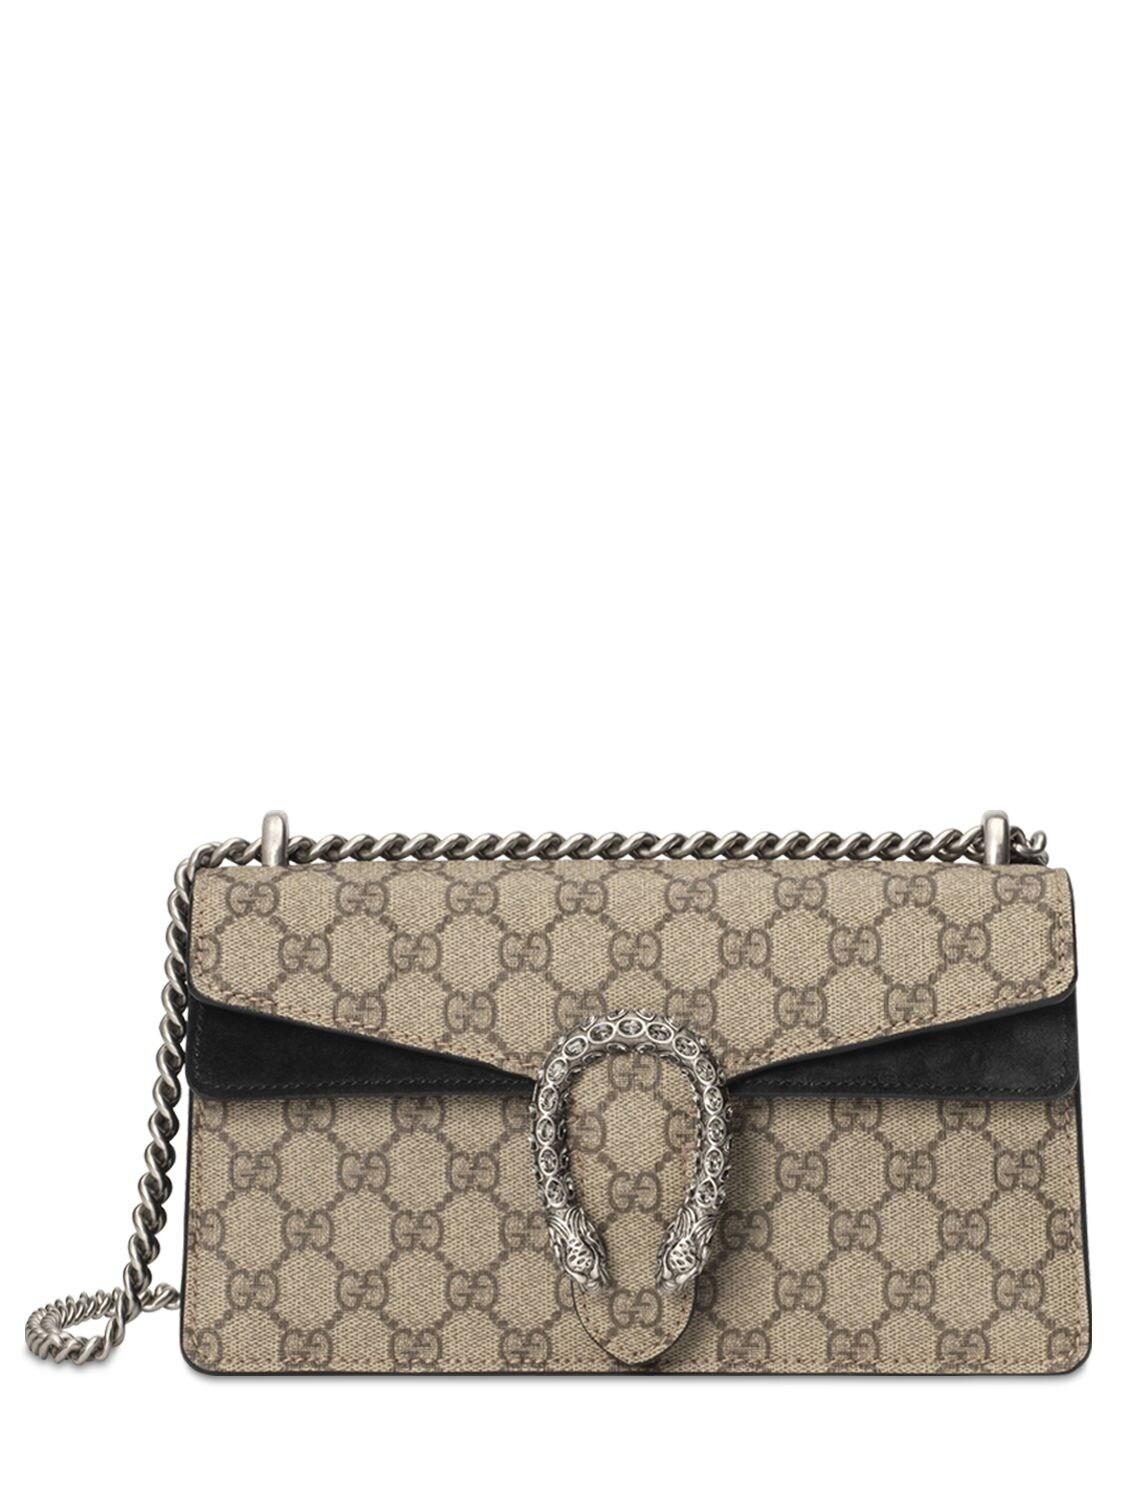 Bekræftelse to fortvivlelse Gucci Canvas Dionysus Small GG Shoulder Bag in Taupe/Black (Natural) - Save  19% - Lyst